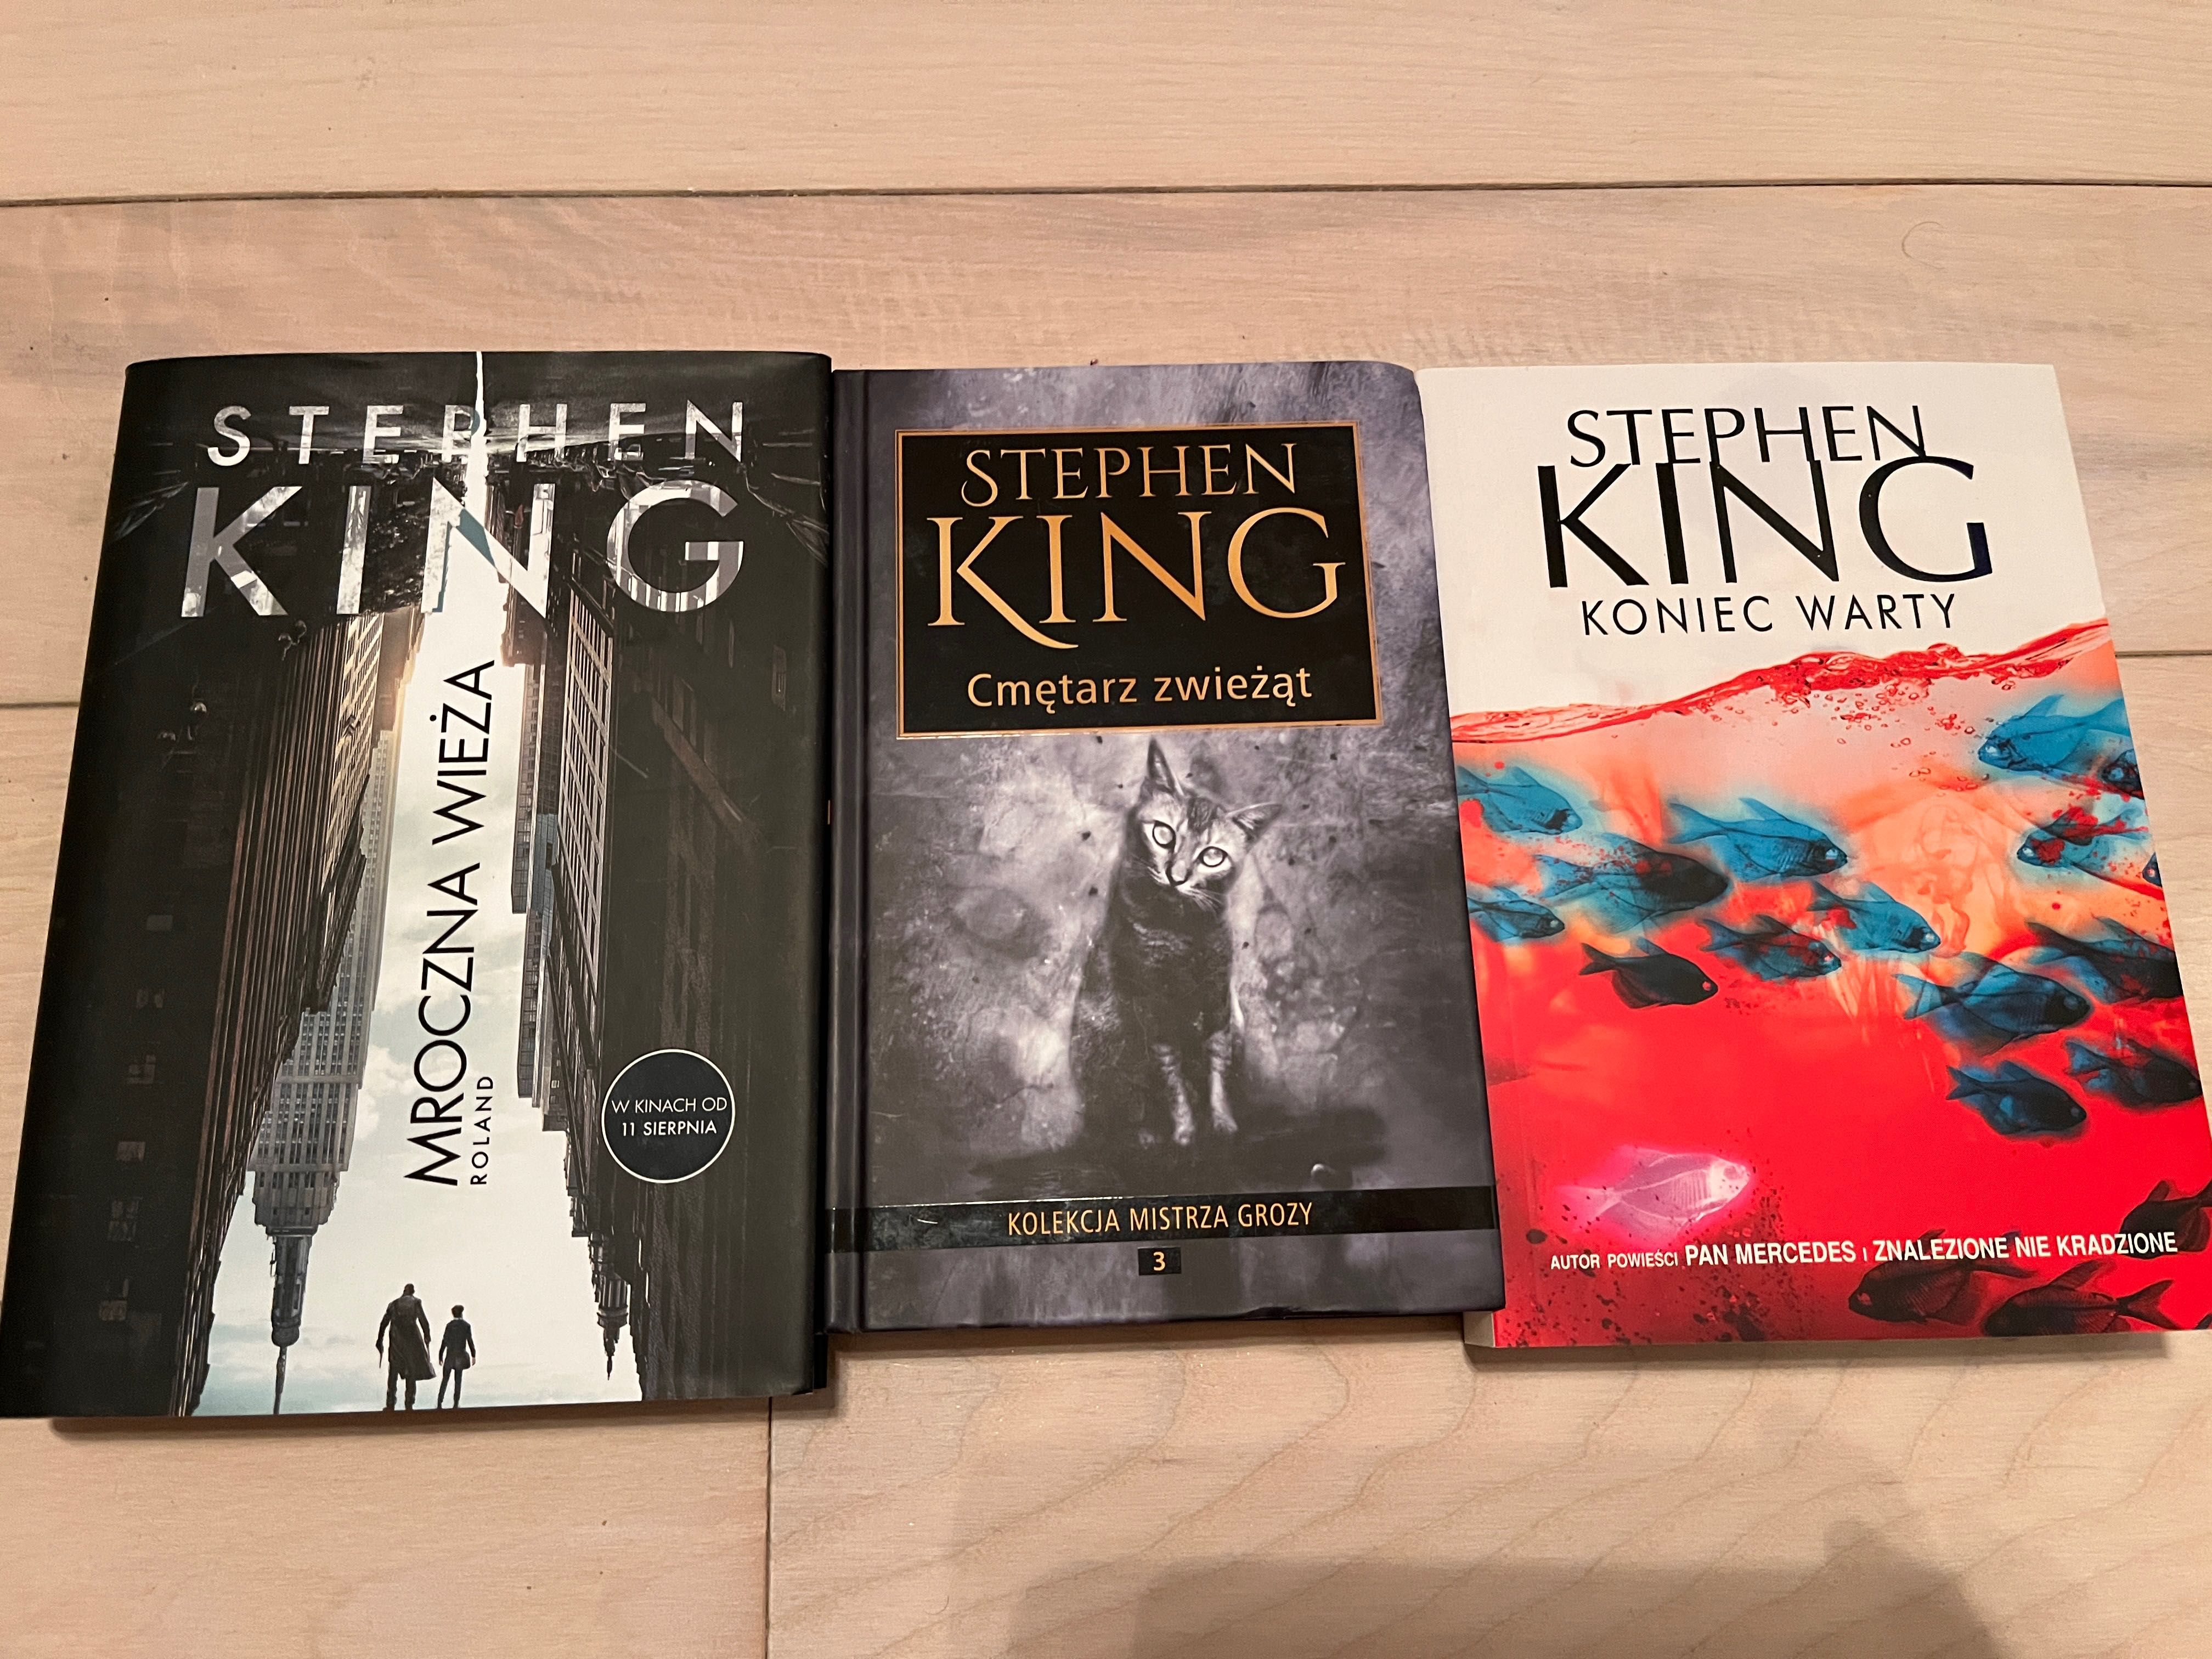 Stephen King Mroczna Wieża, Koniec Warty, Cmętarz zwieżąt